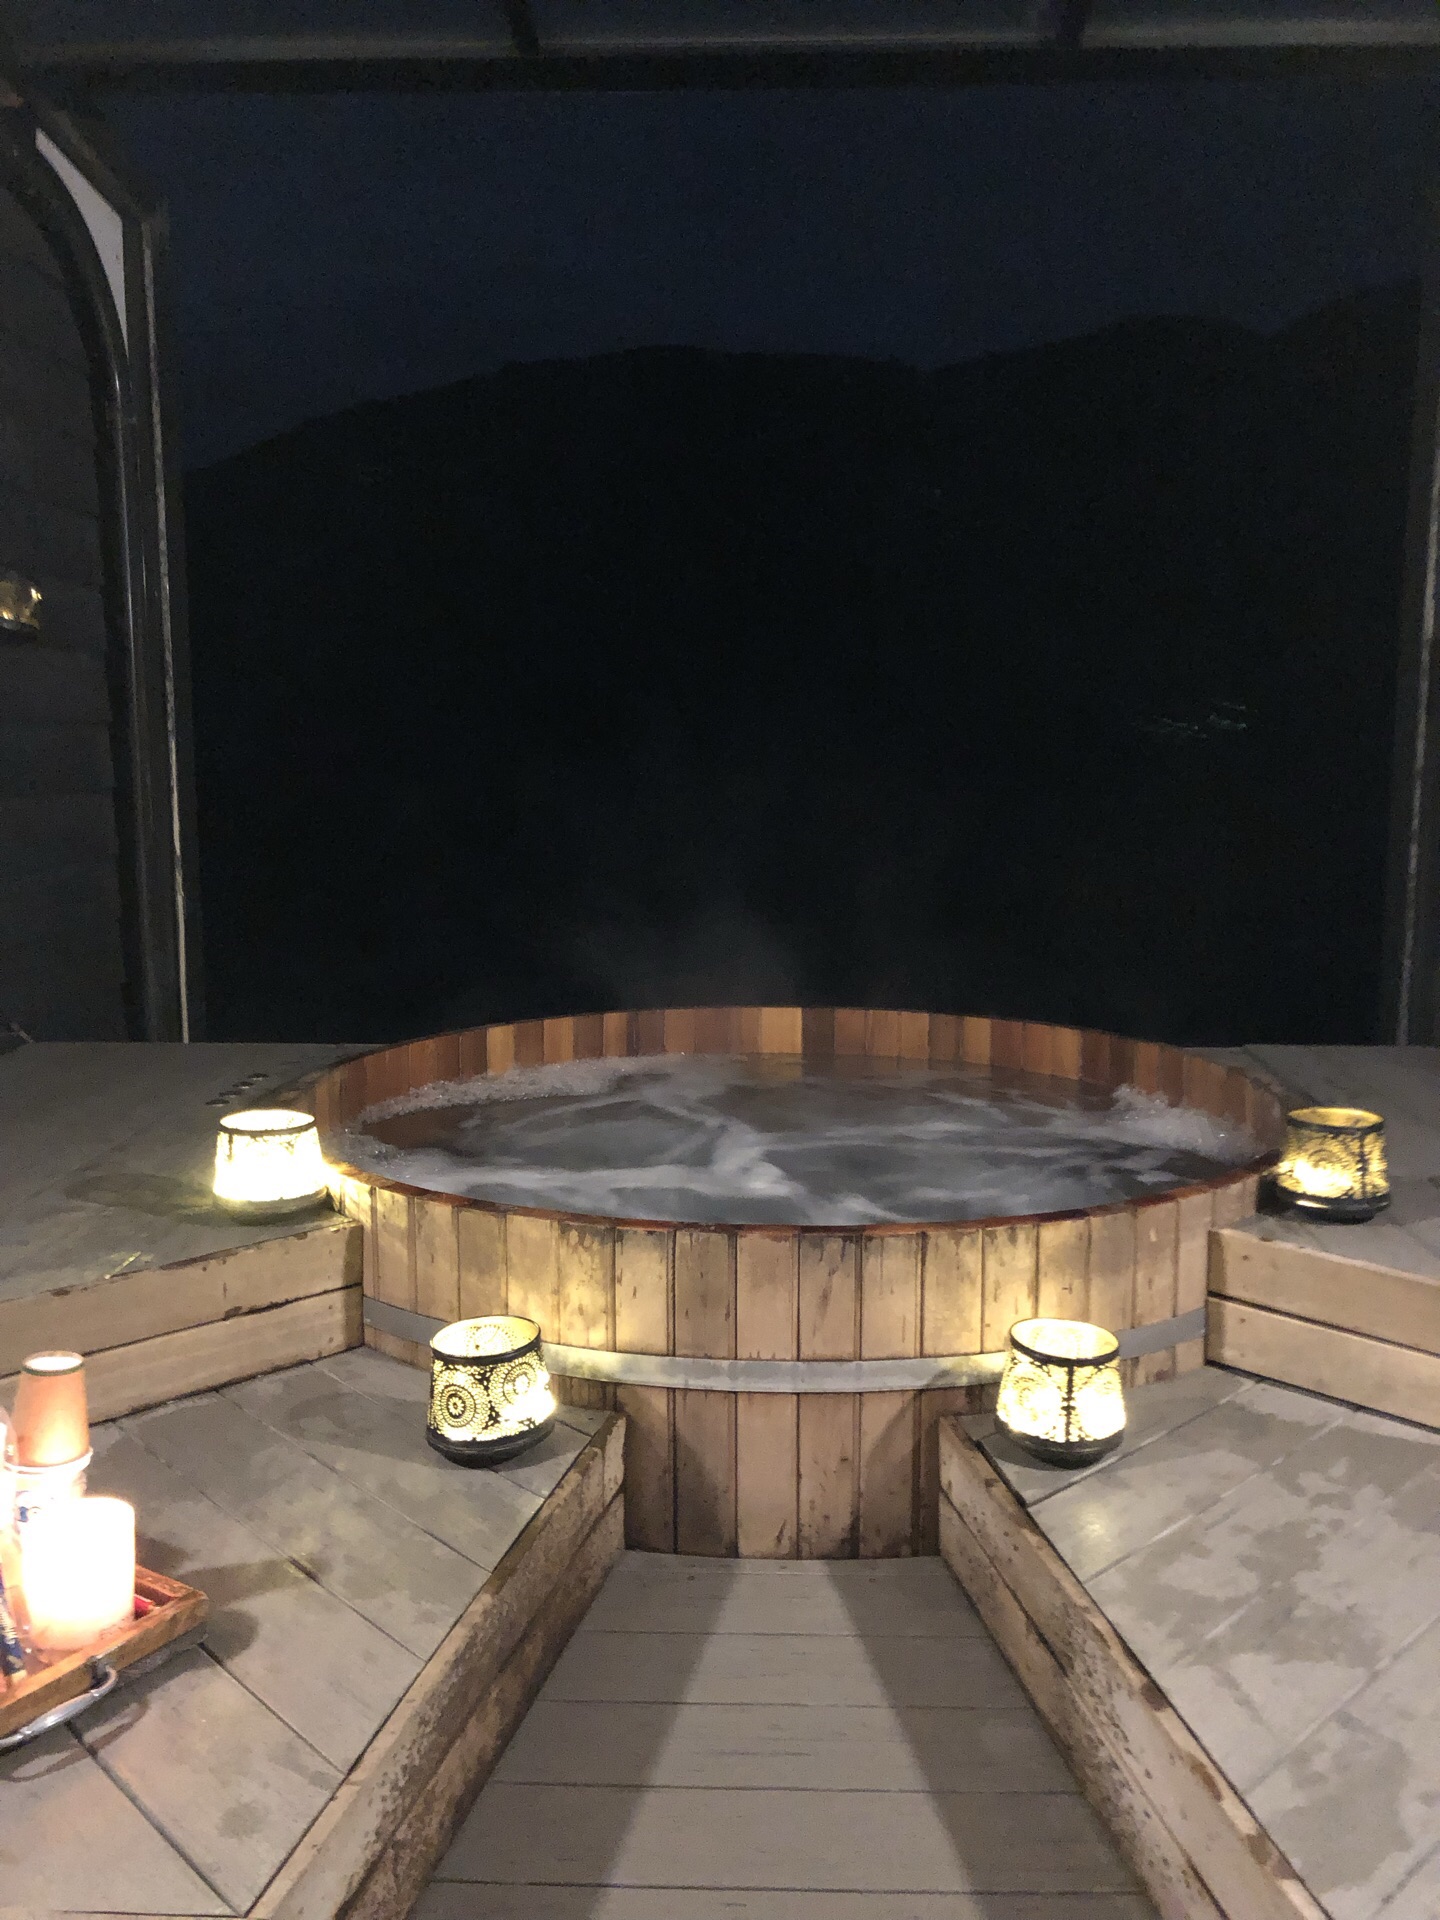 福州木桶温泉图片